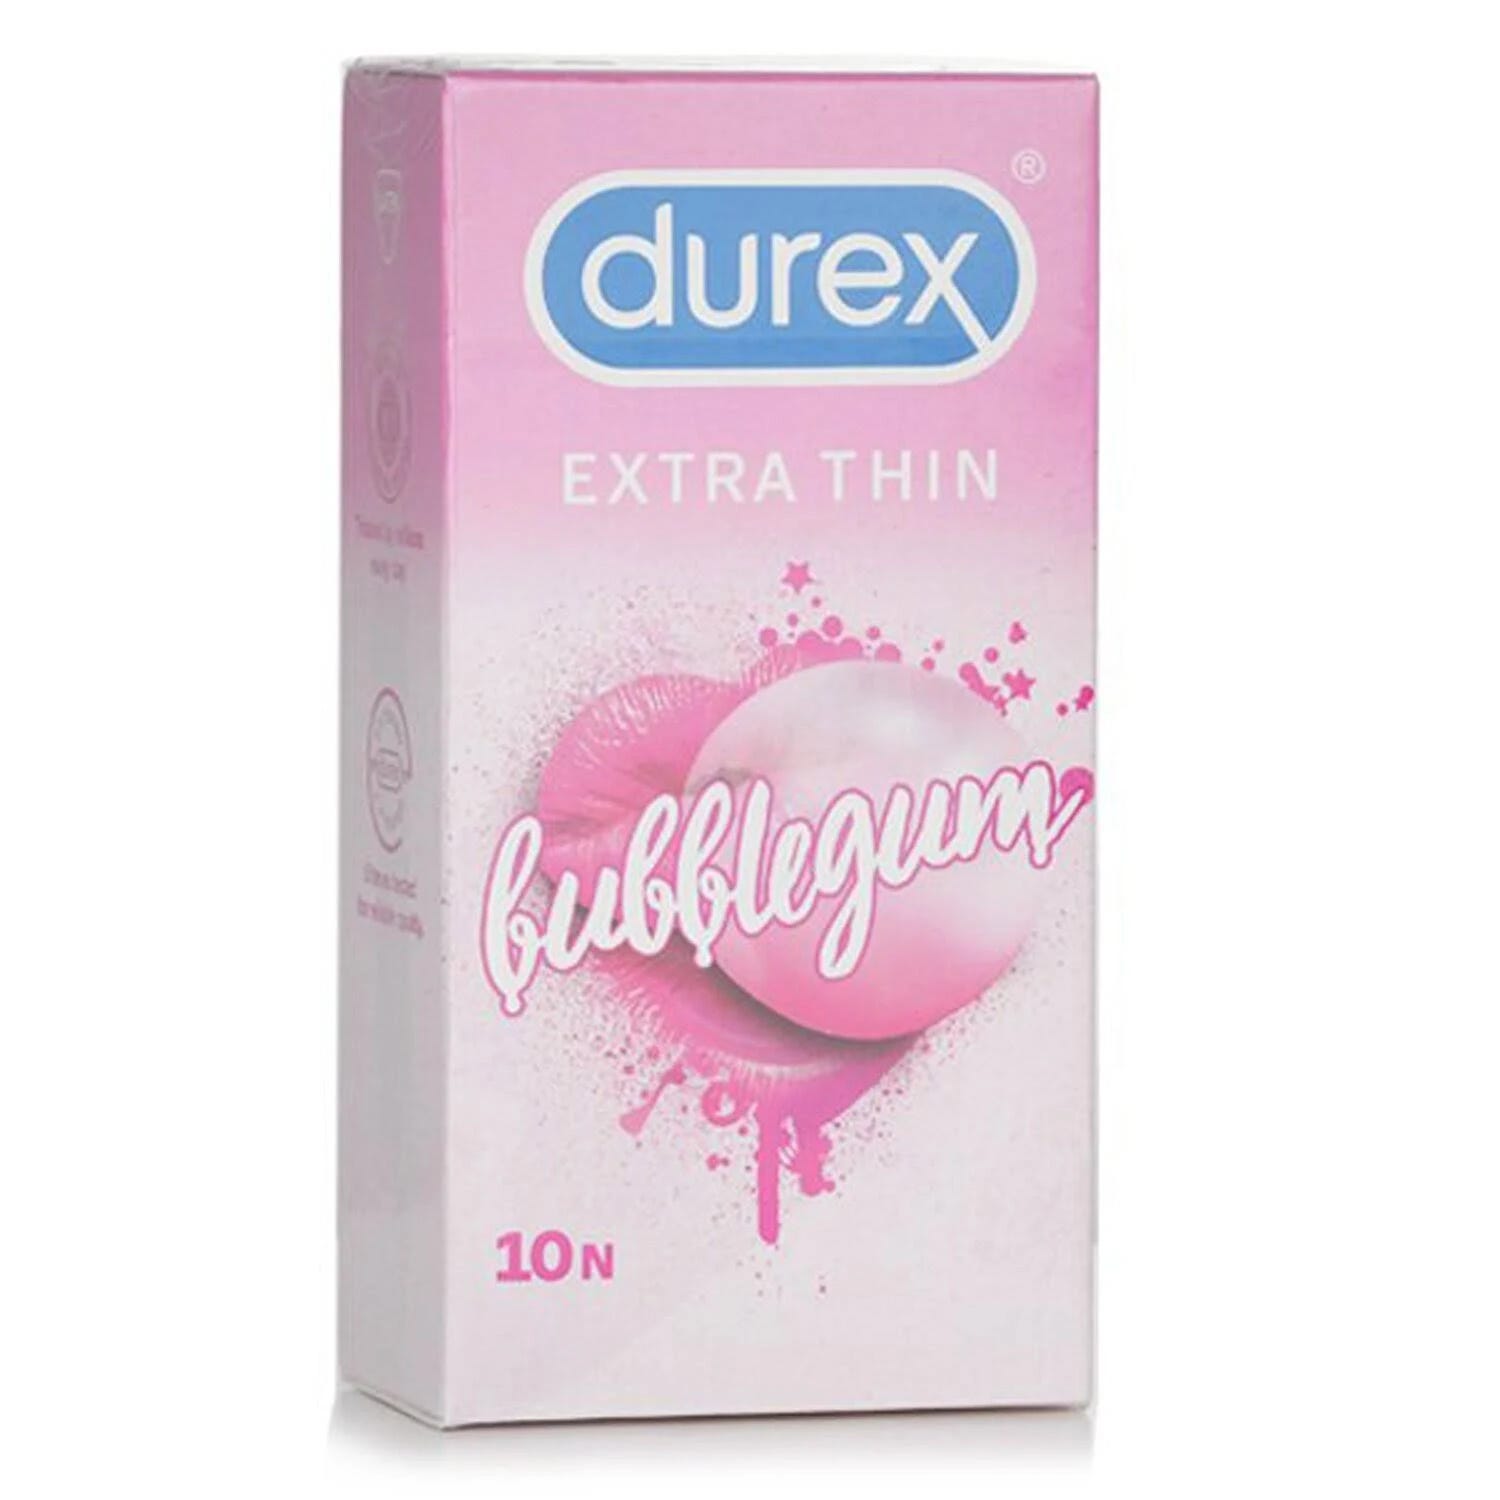 Durex Extra Thin Bubblegum Flavored Condoms - 10 Pieces | Image